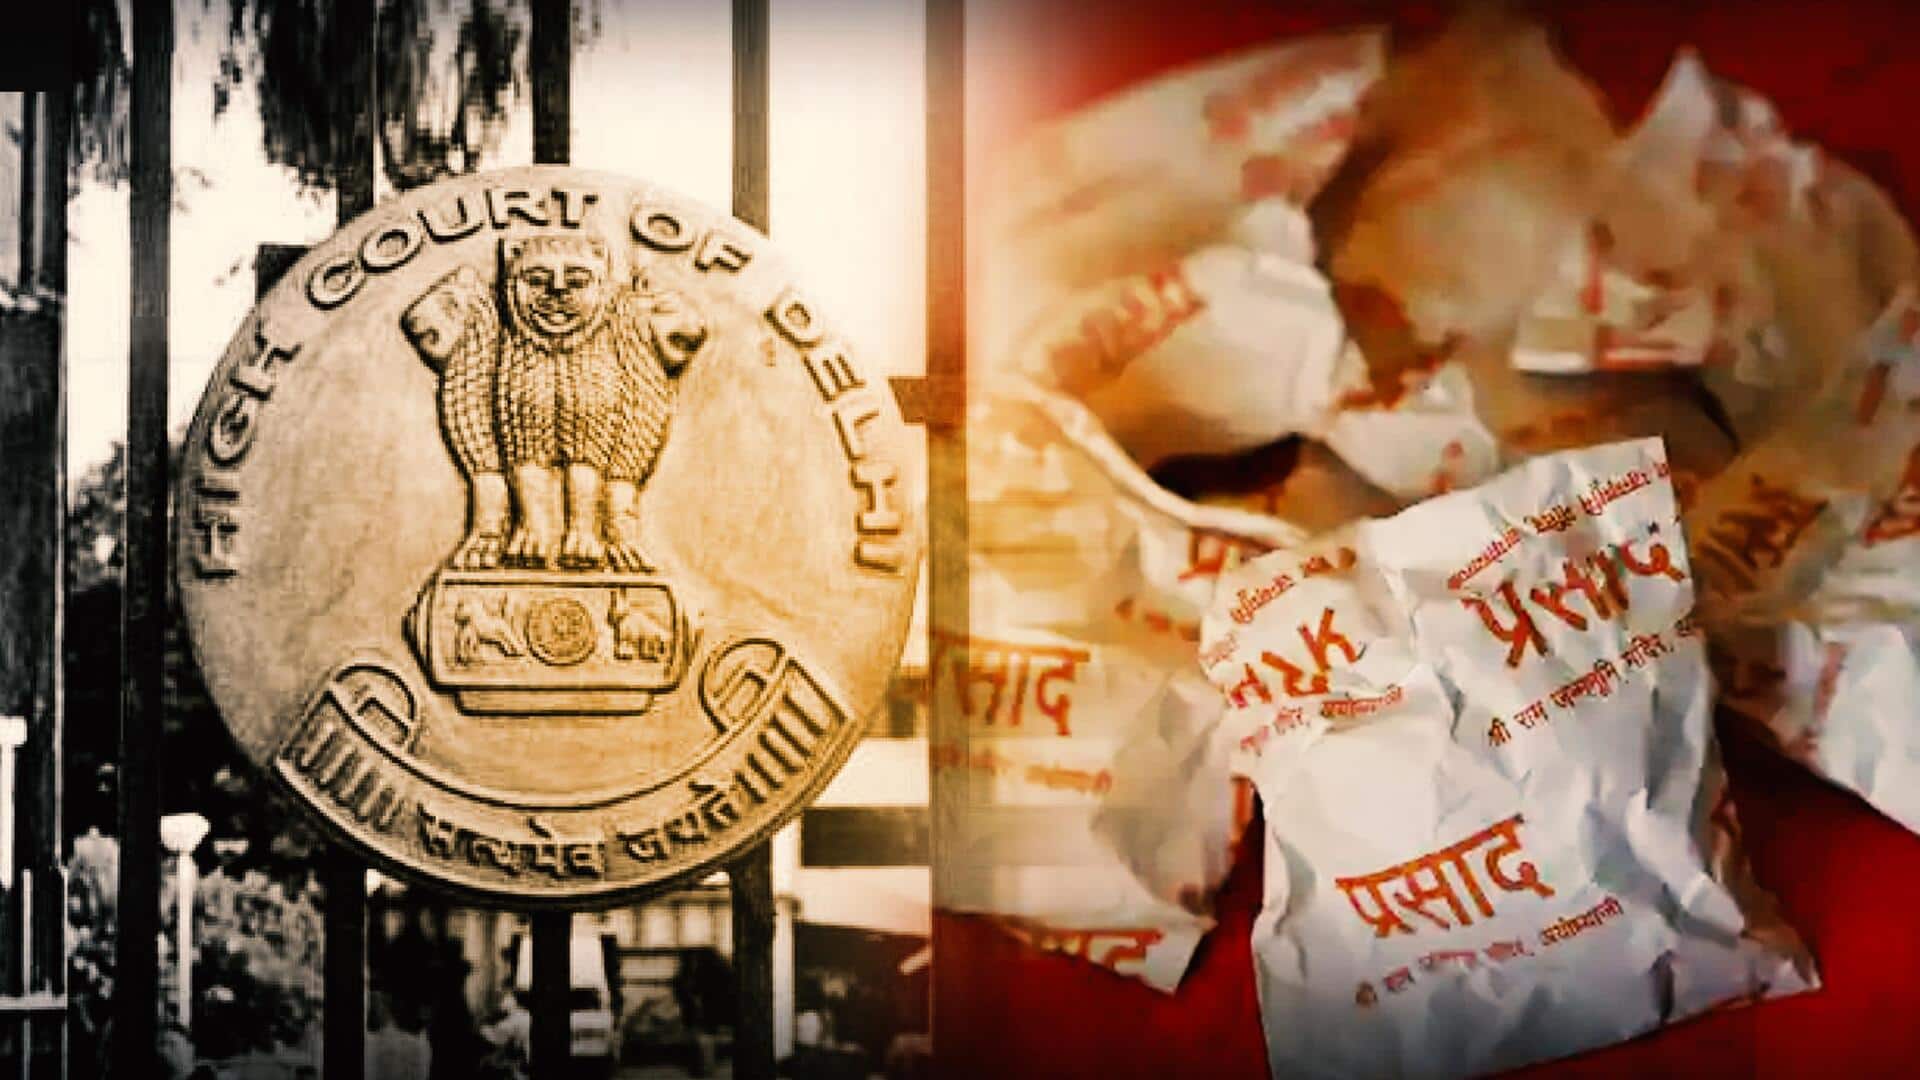 Delhi HC orders suspension of website offering Ram Mandir 'prasad'